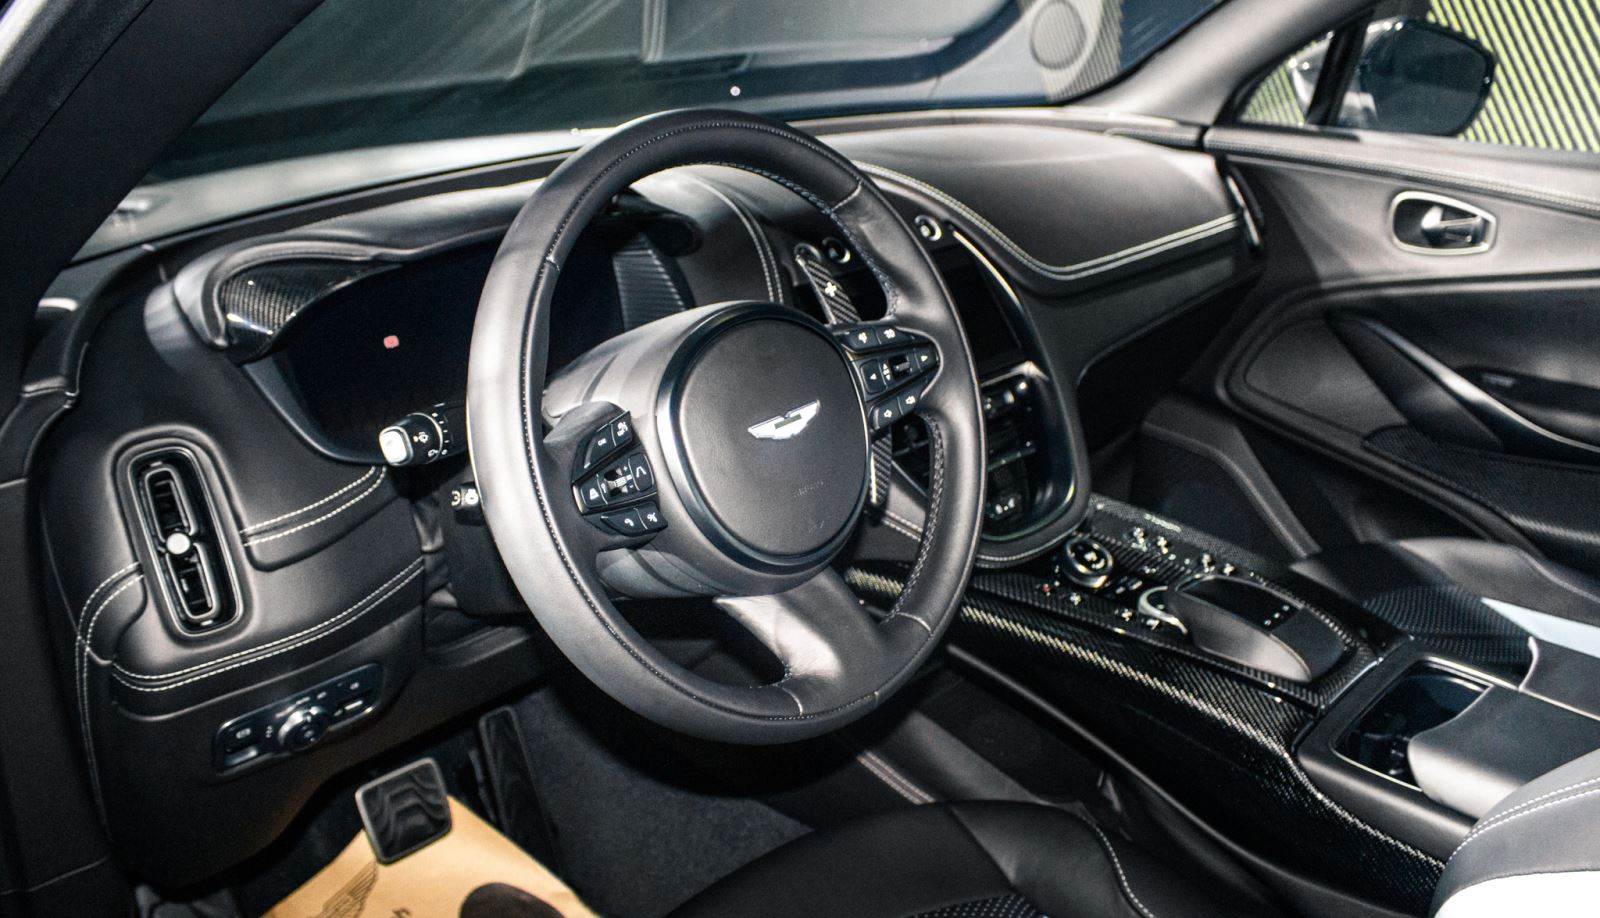 Ra mắt Aston Martin DBX707 tại Việt Nam: Giá từ 21,8 tỷ đồng, ông Đặng Lê Nguyên Vũ là khách hàng đầu tiên - Ảnh 10.